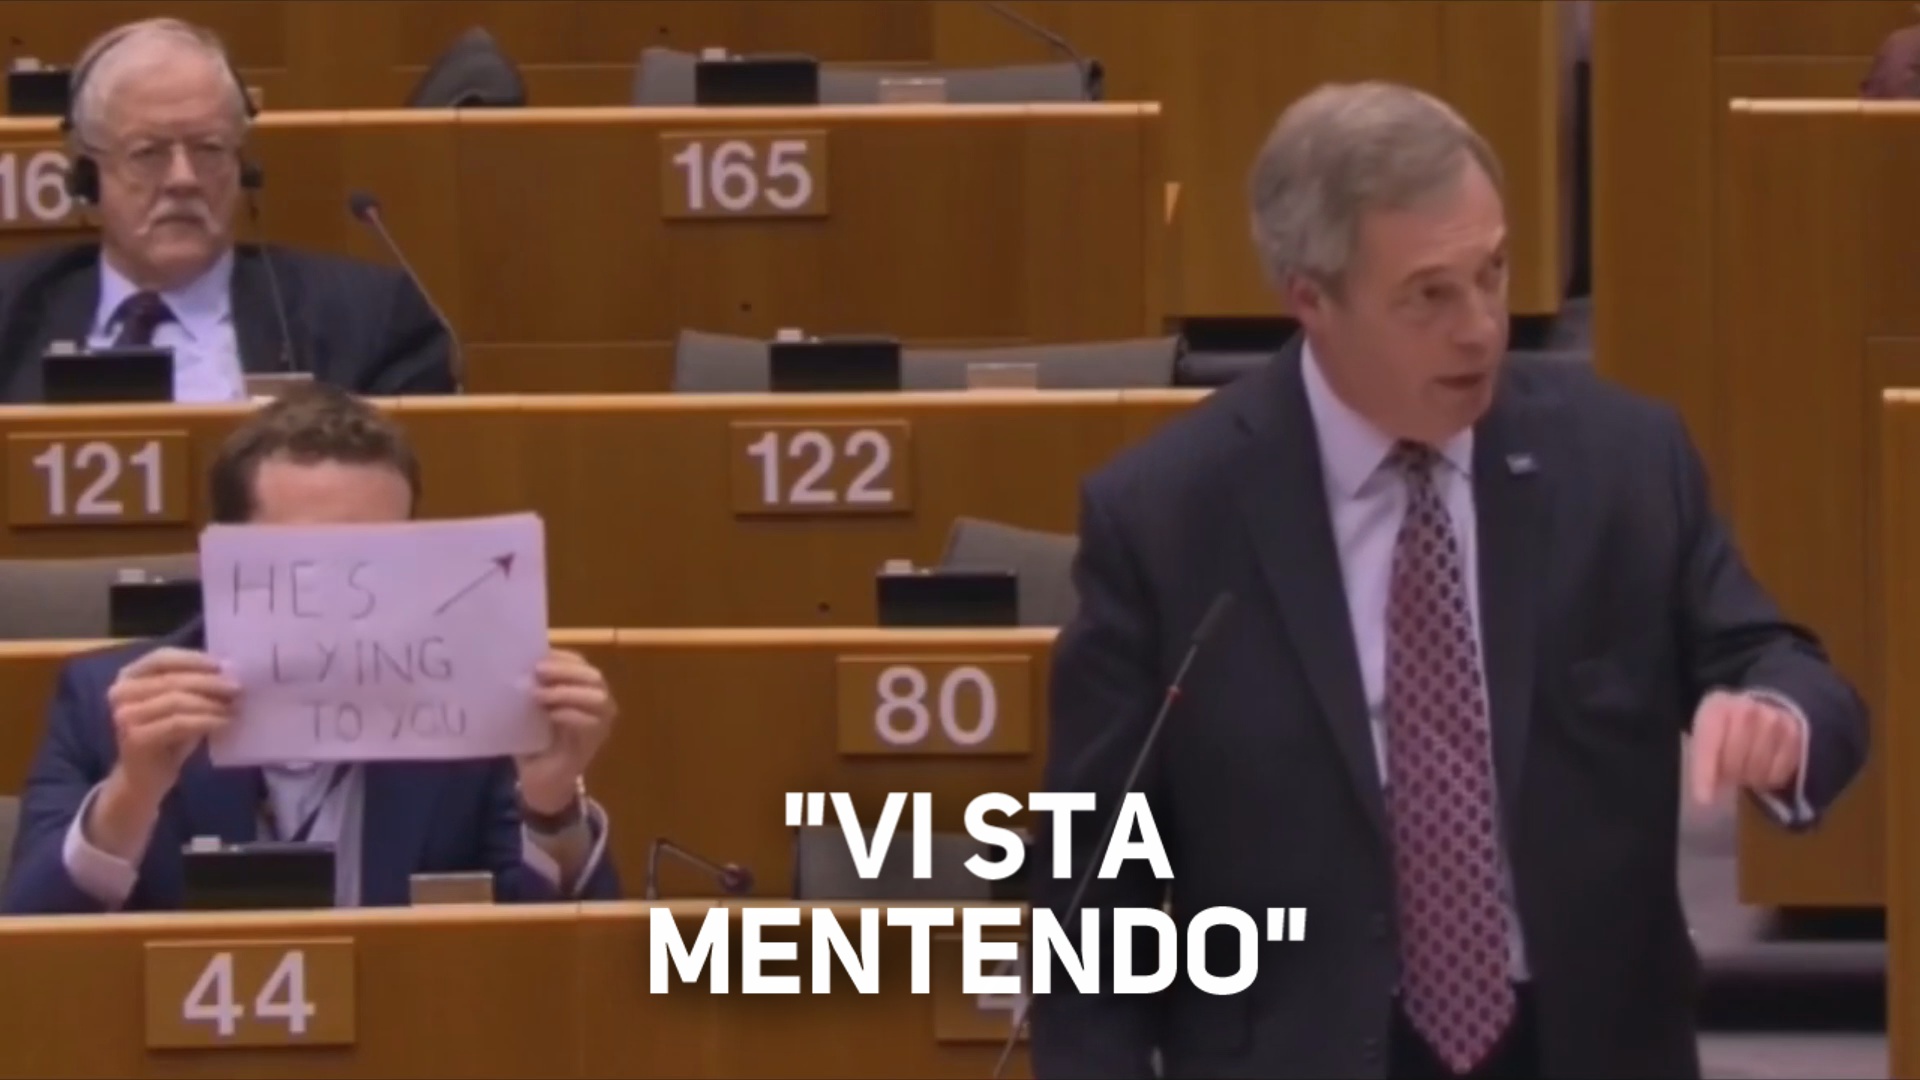 Protesta silenziosa al Parlamento europeo contro Farage